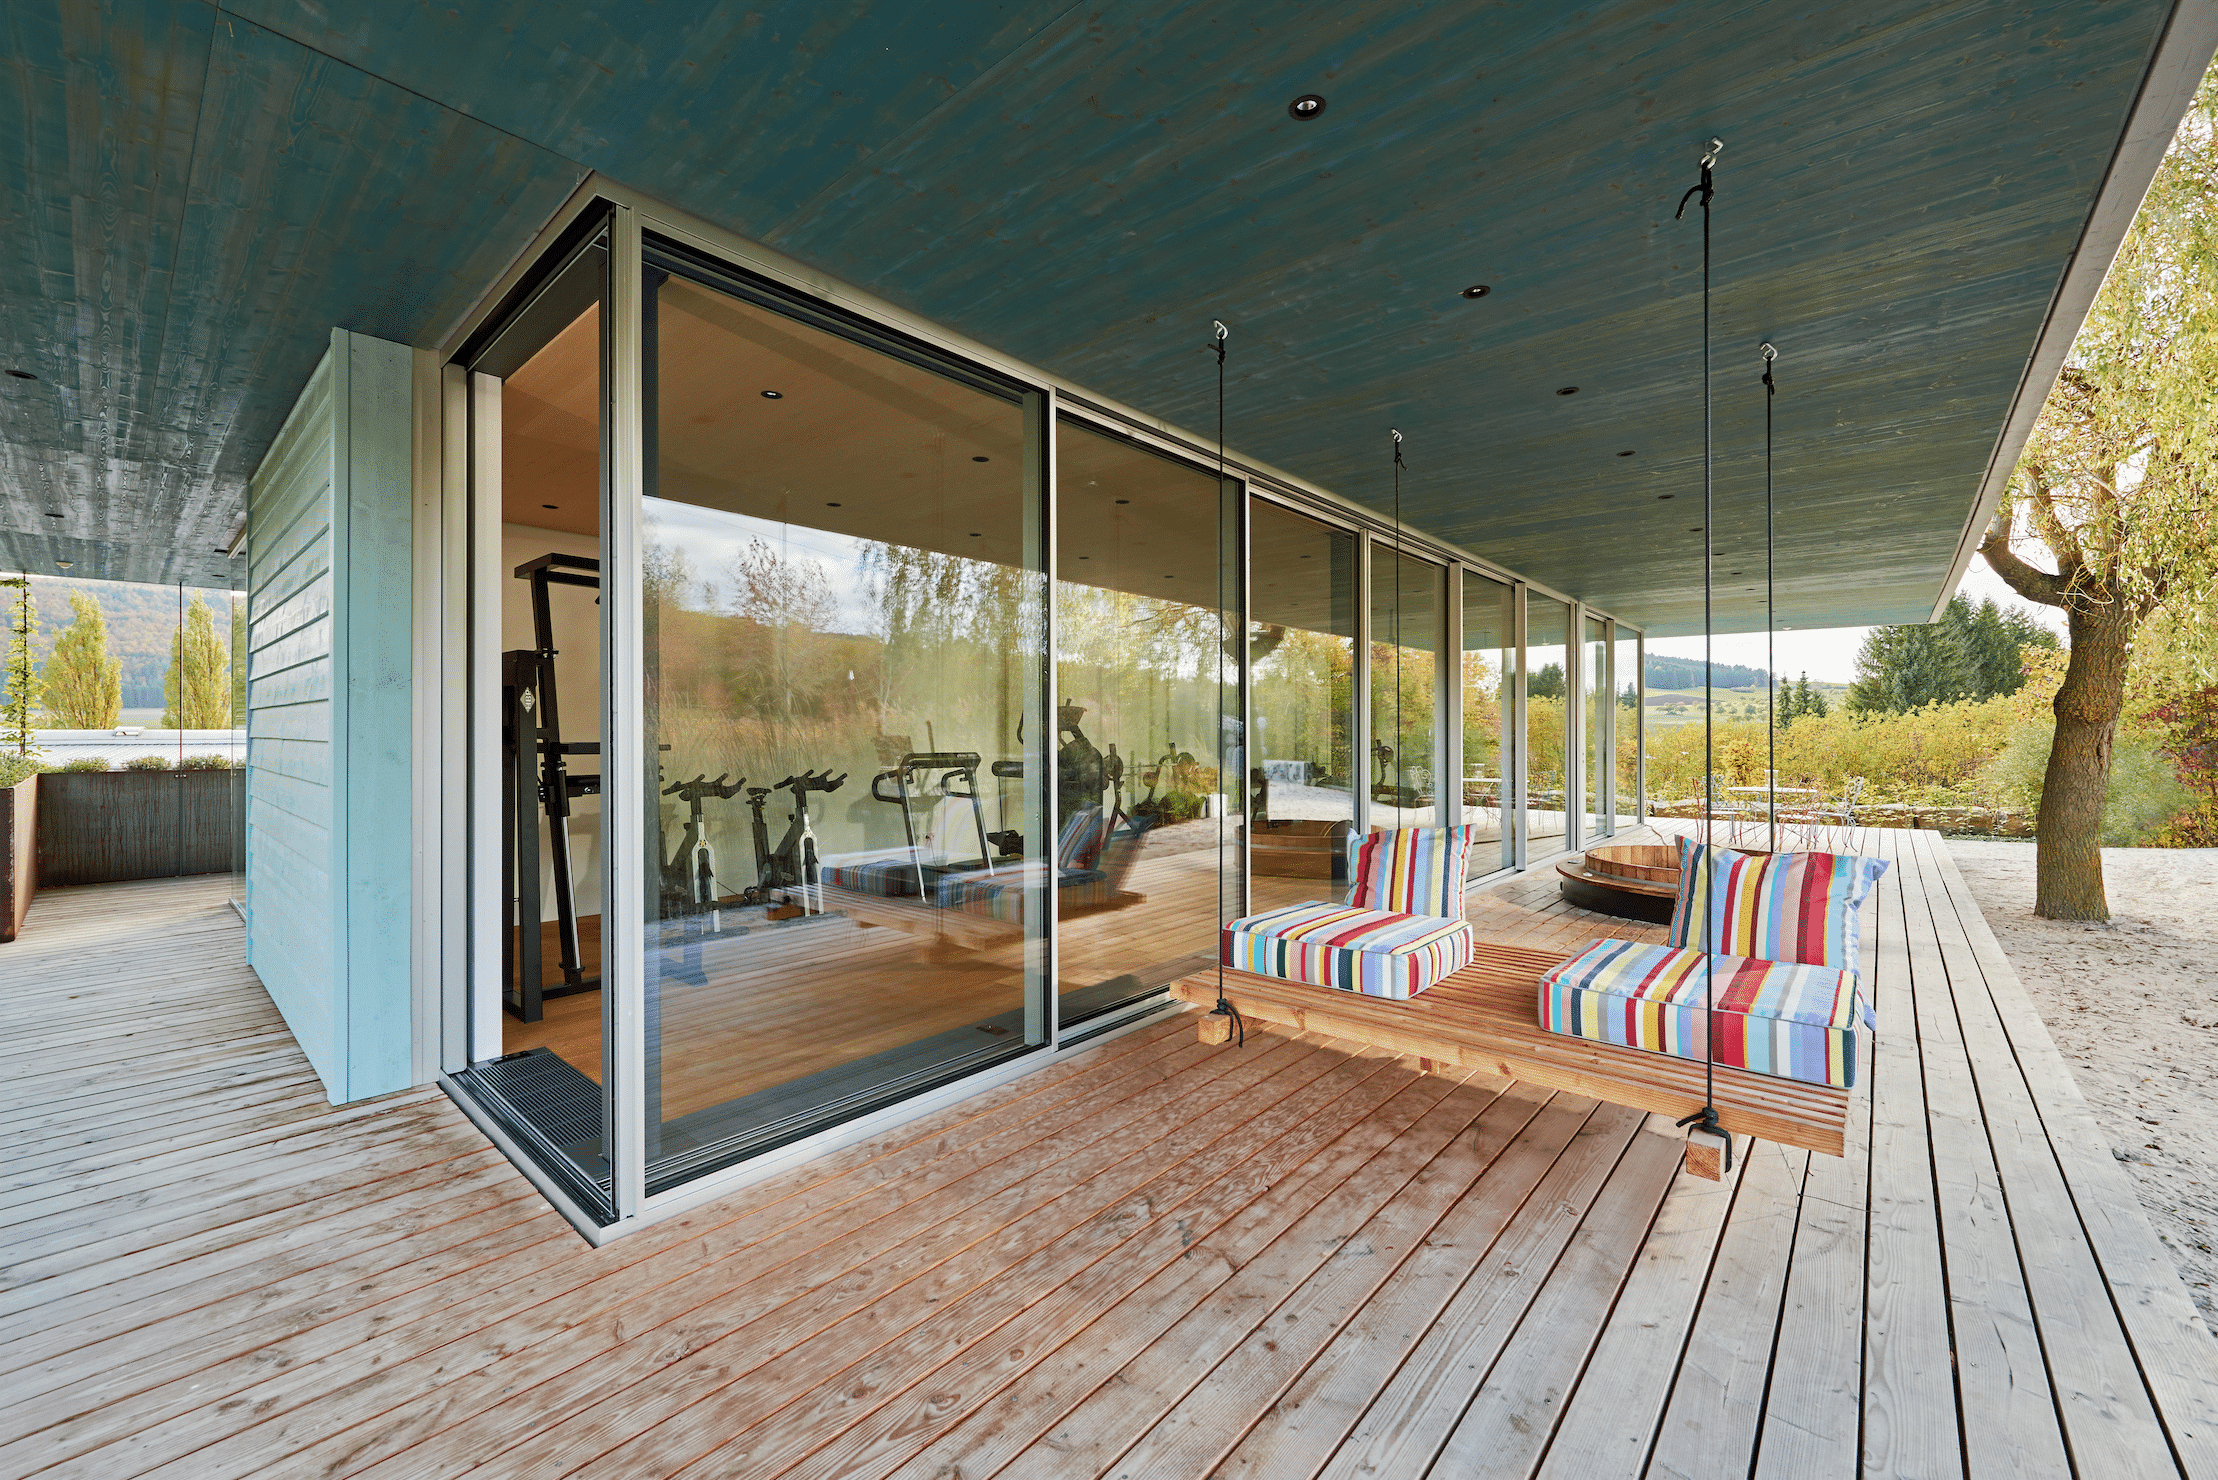 Fitnesscenter mit Holz-Terrasse und Glasfront mit deckenhohen Glas-Schiebetüren von Solarlux in Wintergarten-Optik.